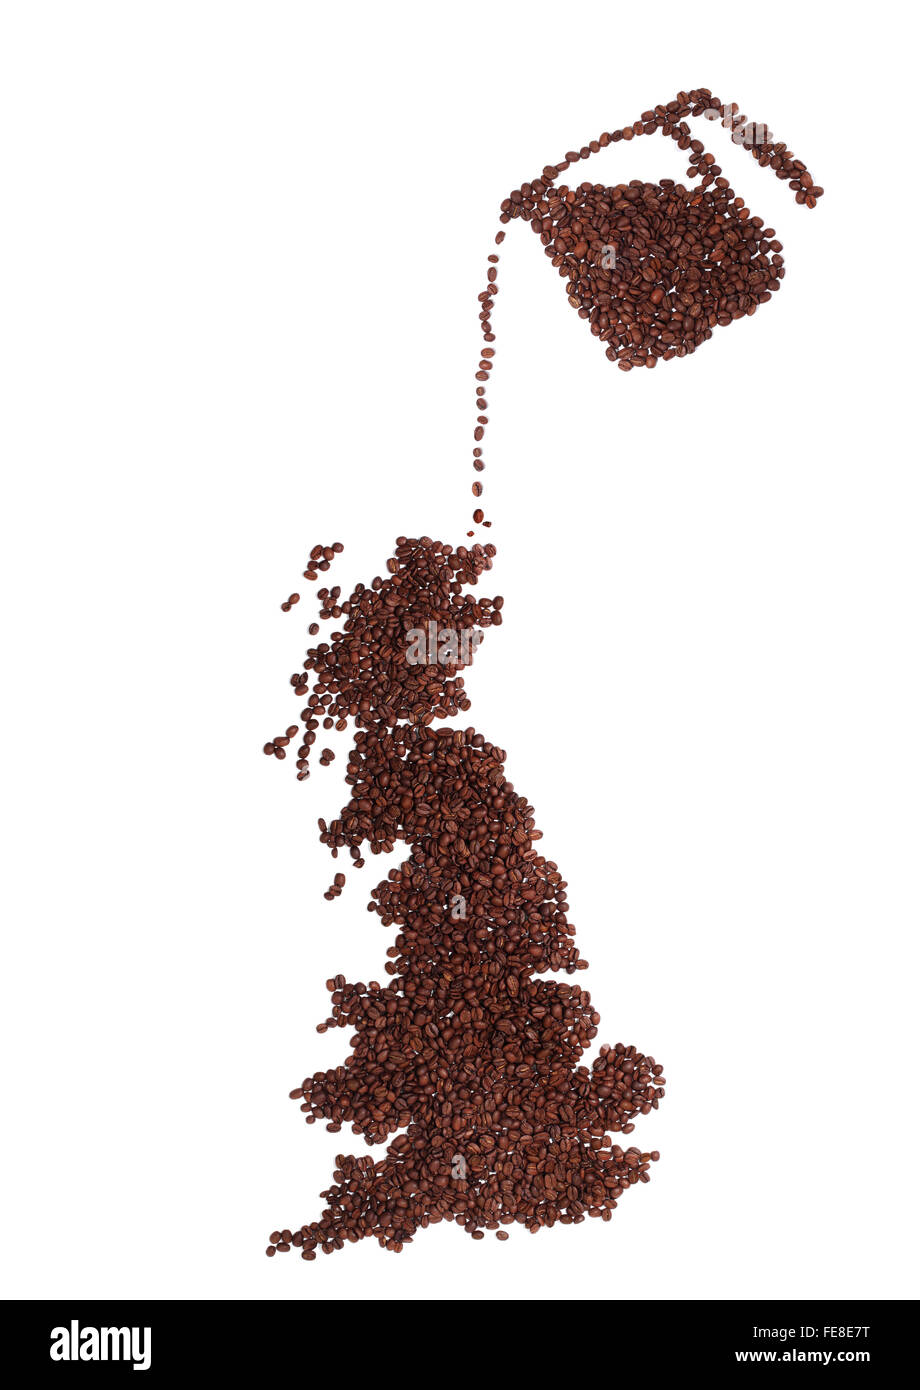 Pot de café verser sur un plan de l'Angleterre et l'Ecosse faites de grains de café rôti frais brun Banque D'Images